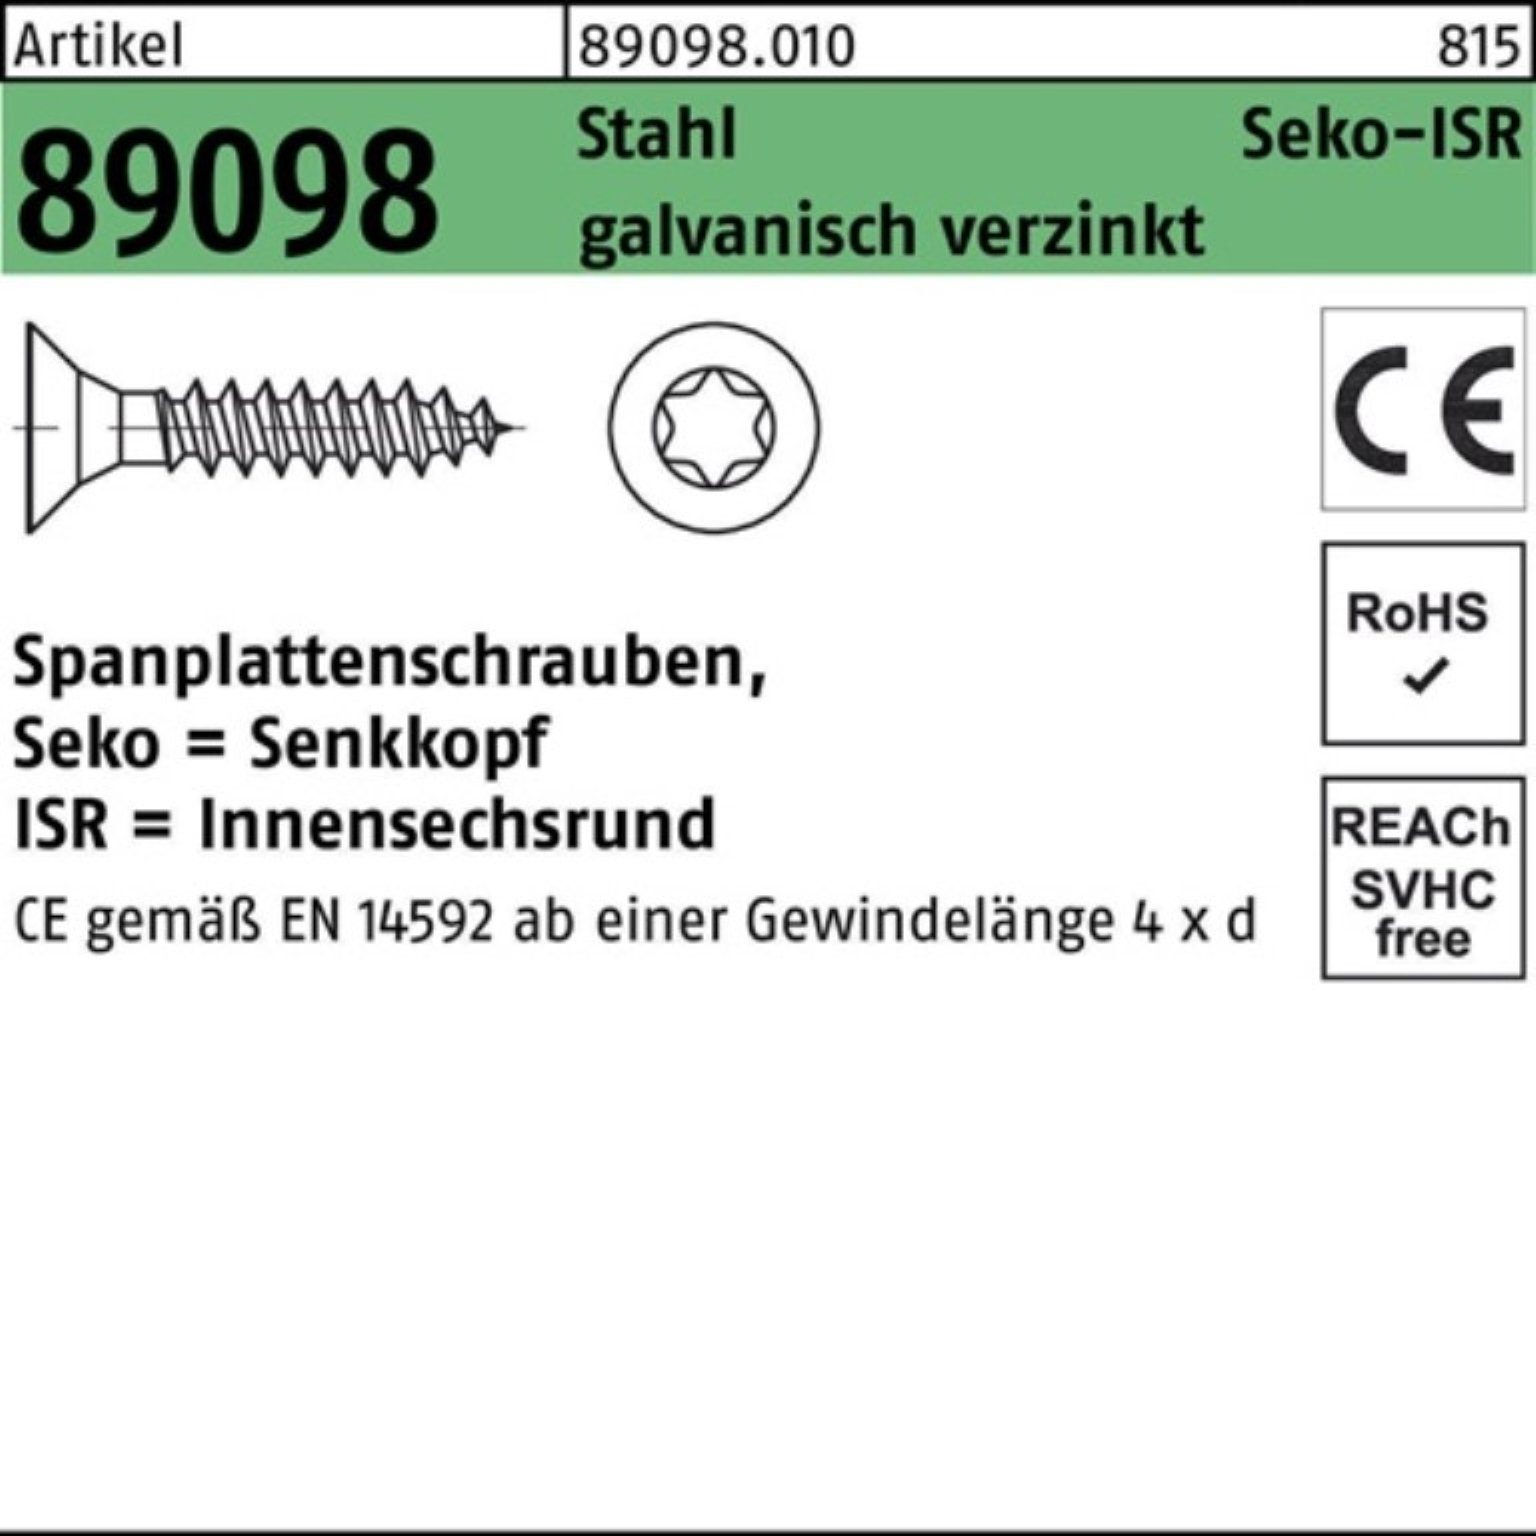 Reyher Spanplattenschraube 1000er Pack Spanplattenschraube R 89098 SEKO ISR VG 4x20-T20 Stahl gal